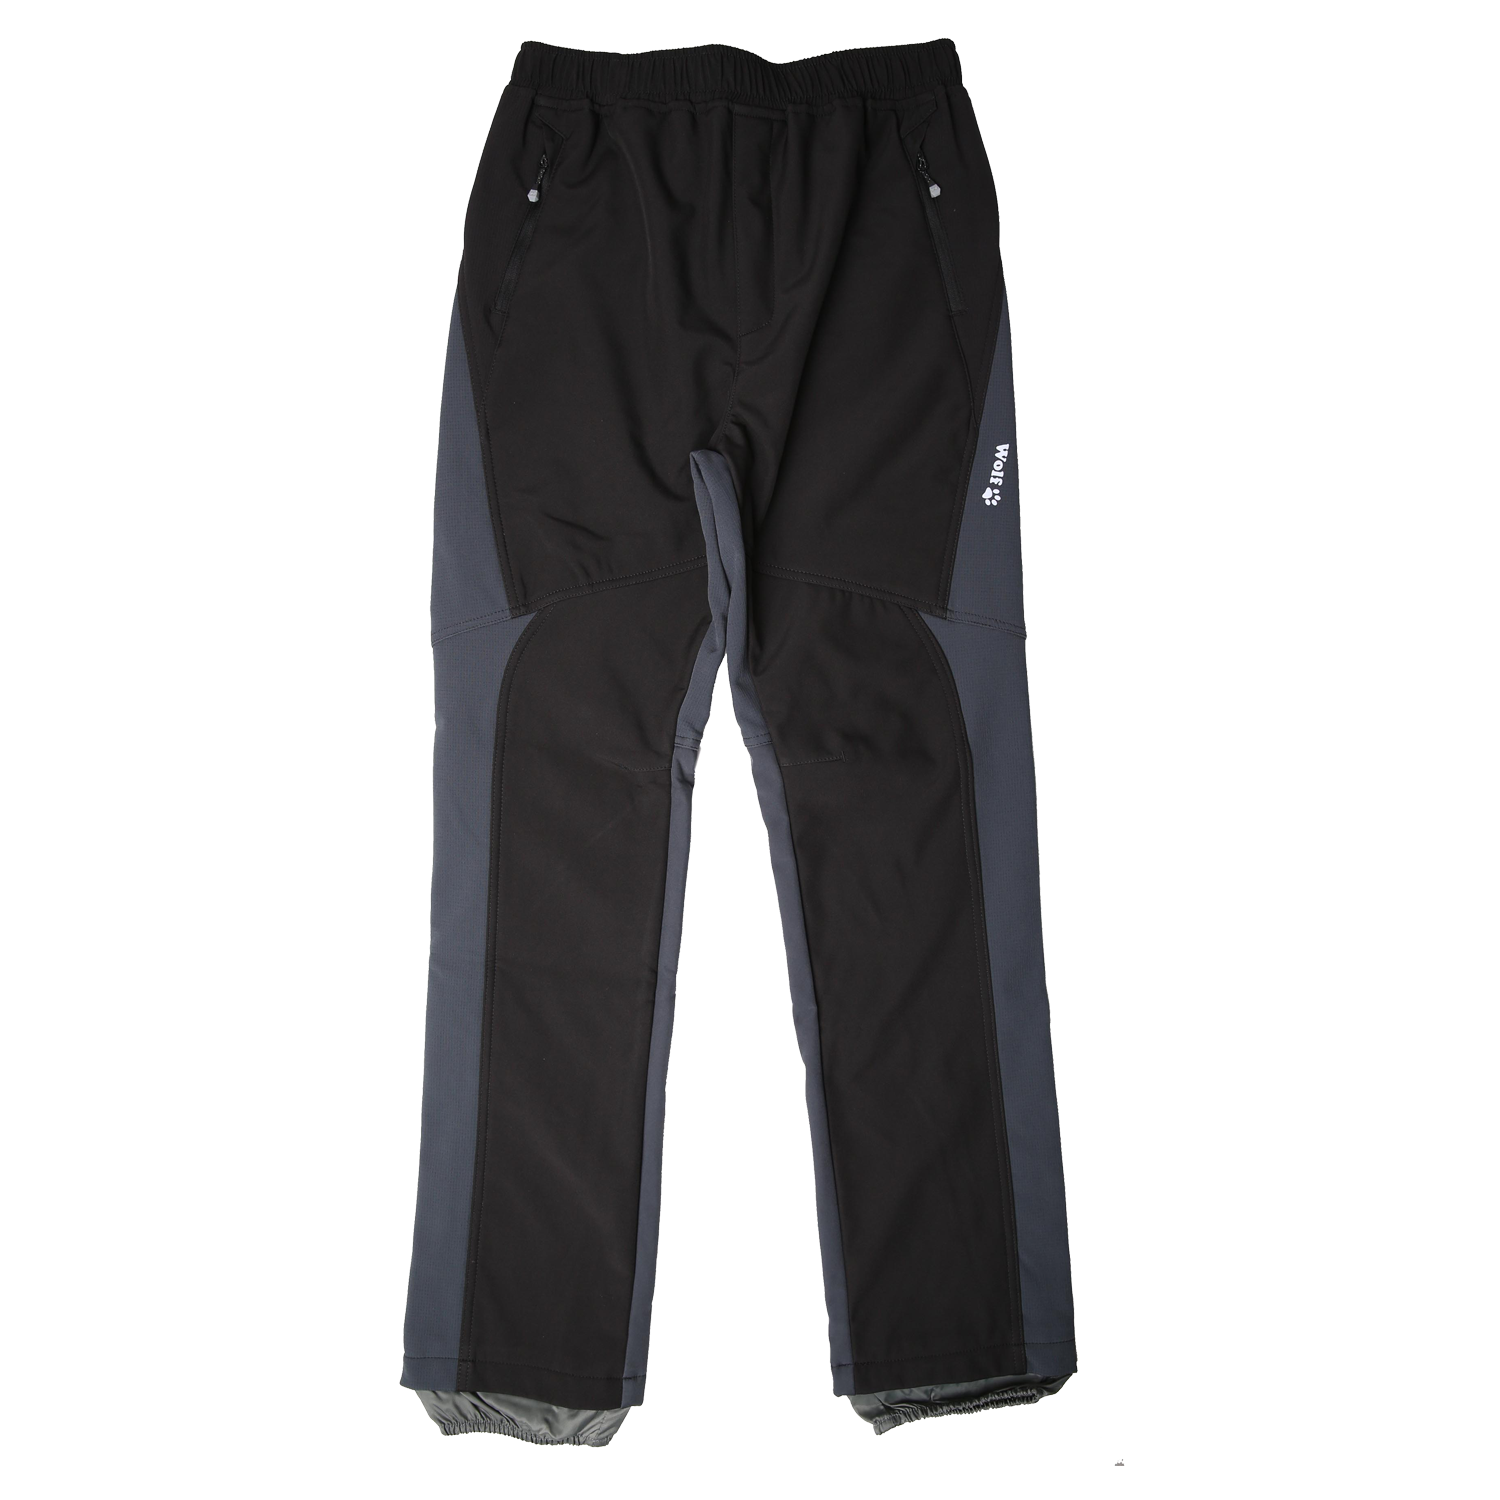 Chlapecké softshellové kalhoty, zateplené - Wolf B2298, černá Barva: Černá, Velikost: 164